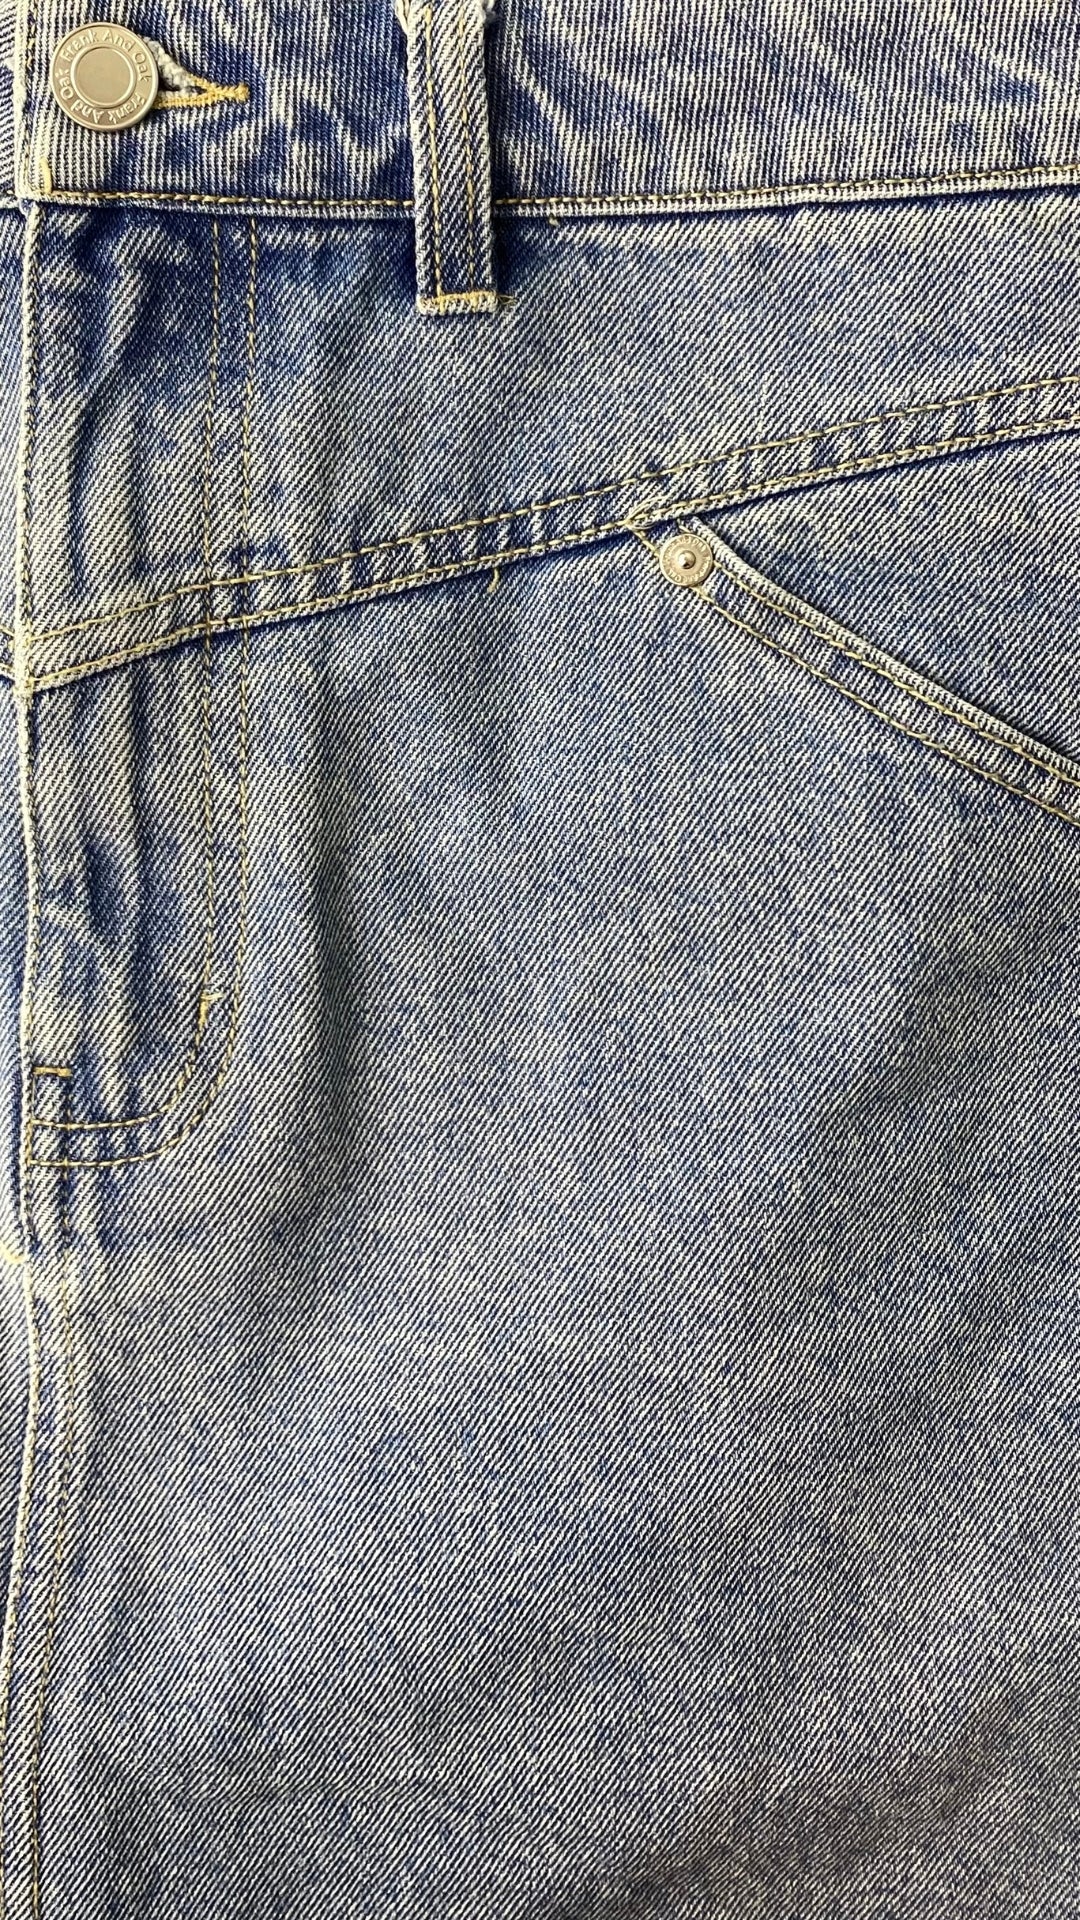 Jupe en jeans pâle Frank And Oak, taille large. Vue de près des détails du devant de la jupe.